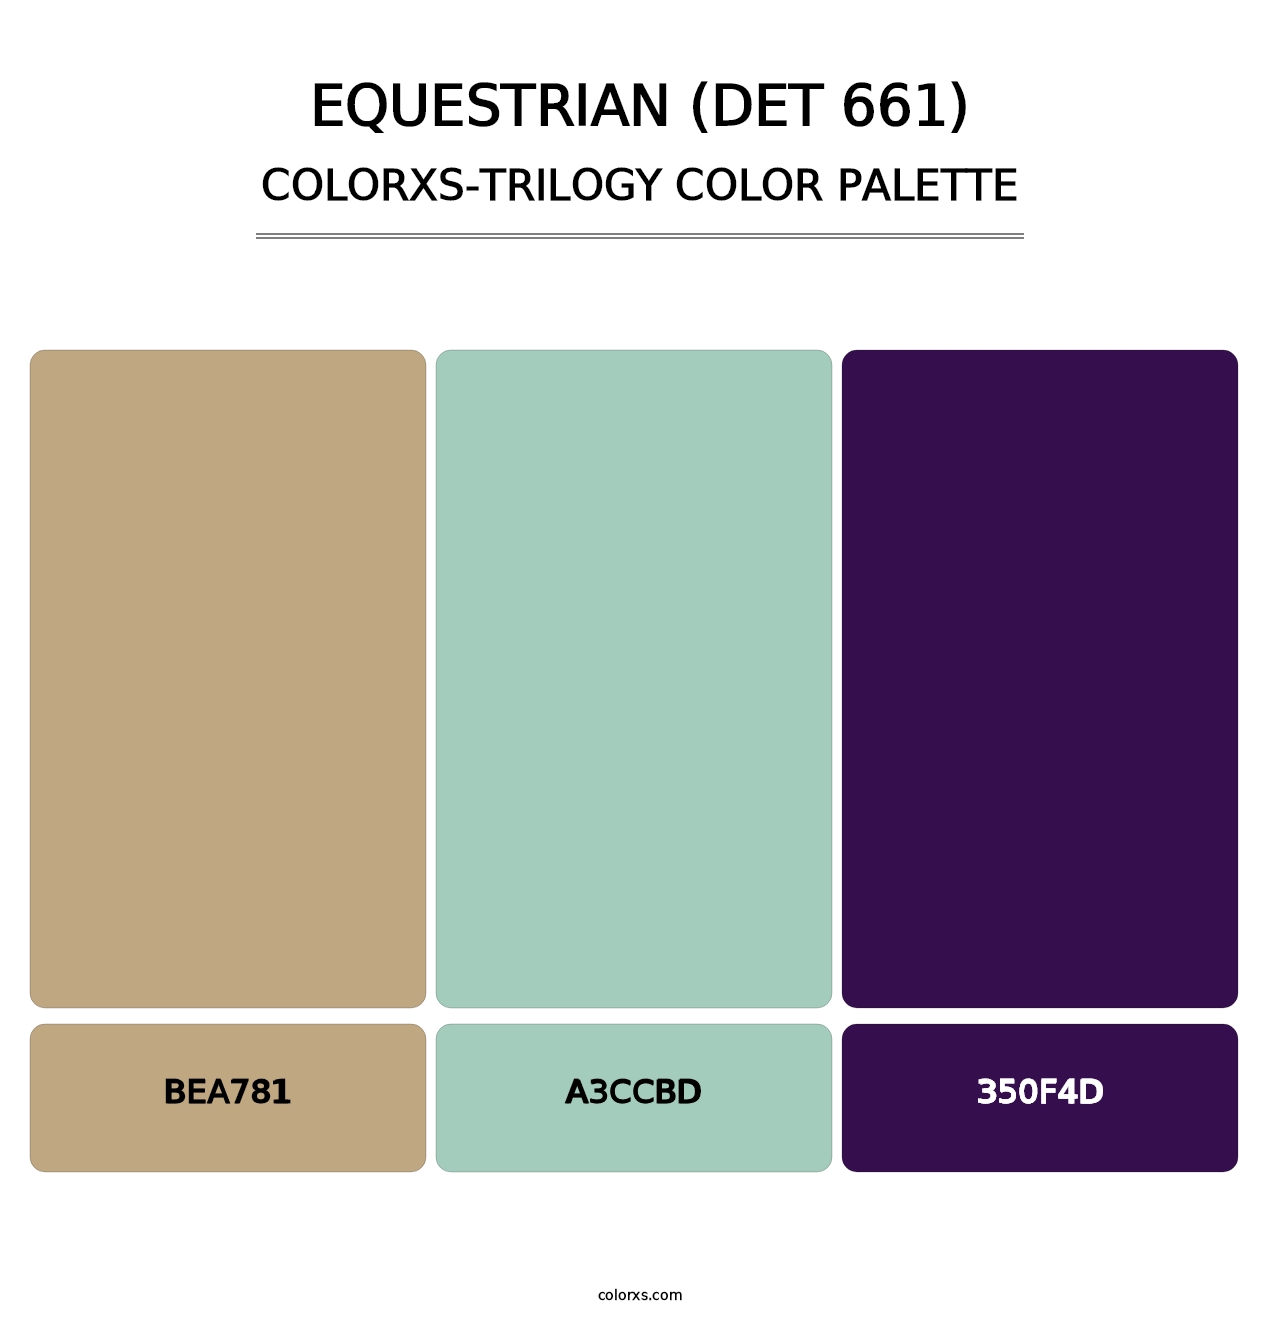 Equestrian (DET 661) - Colorxs Trilogy Palette